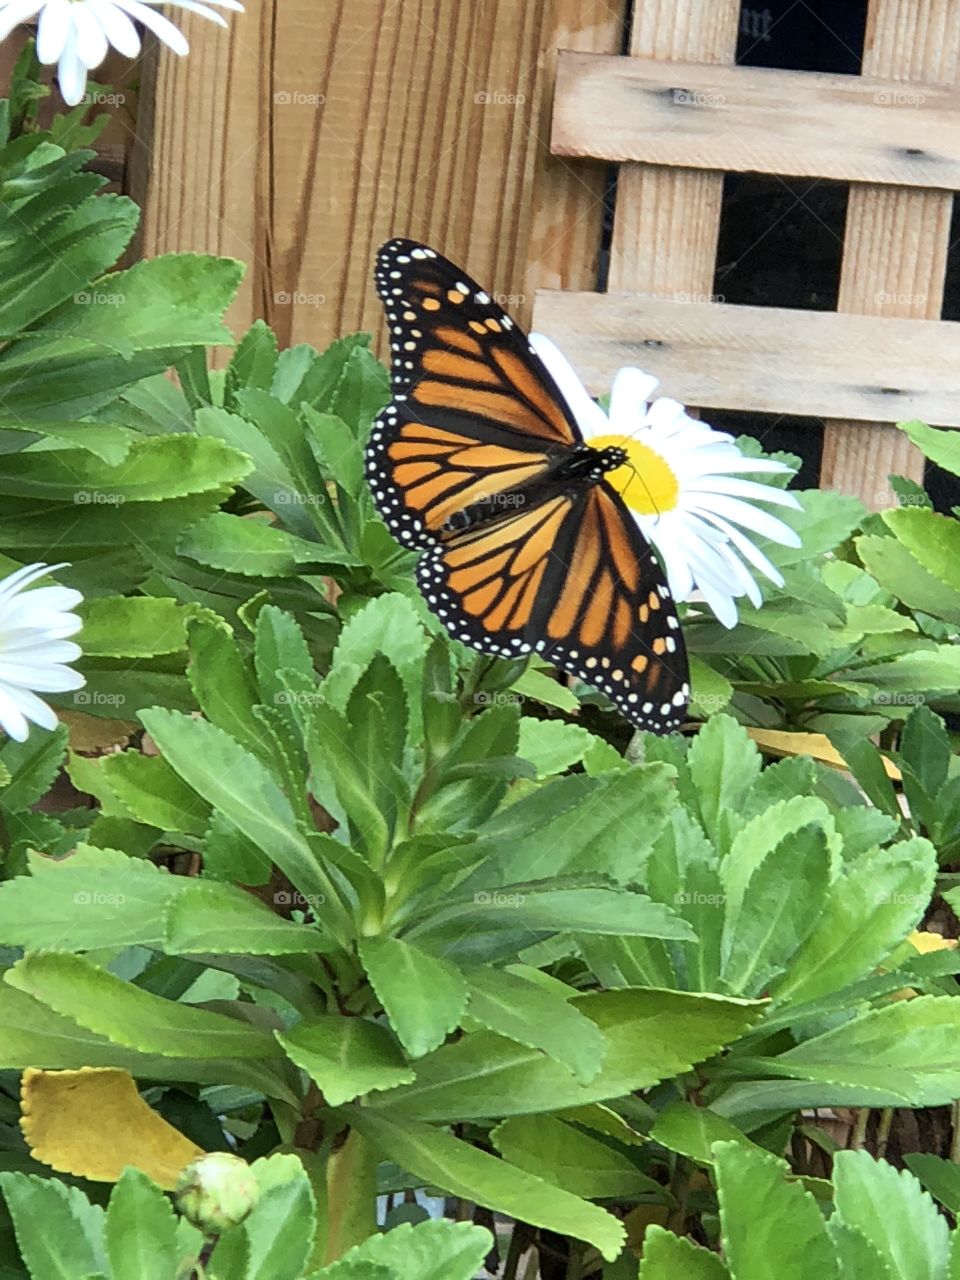 Monarch butterfly on flower garden. 